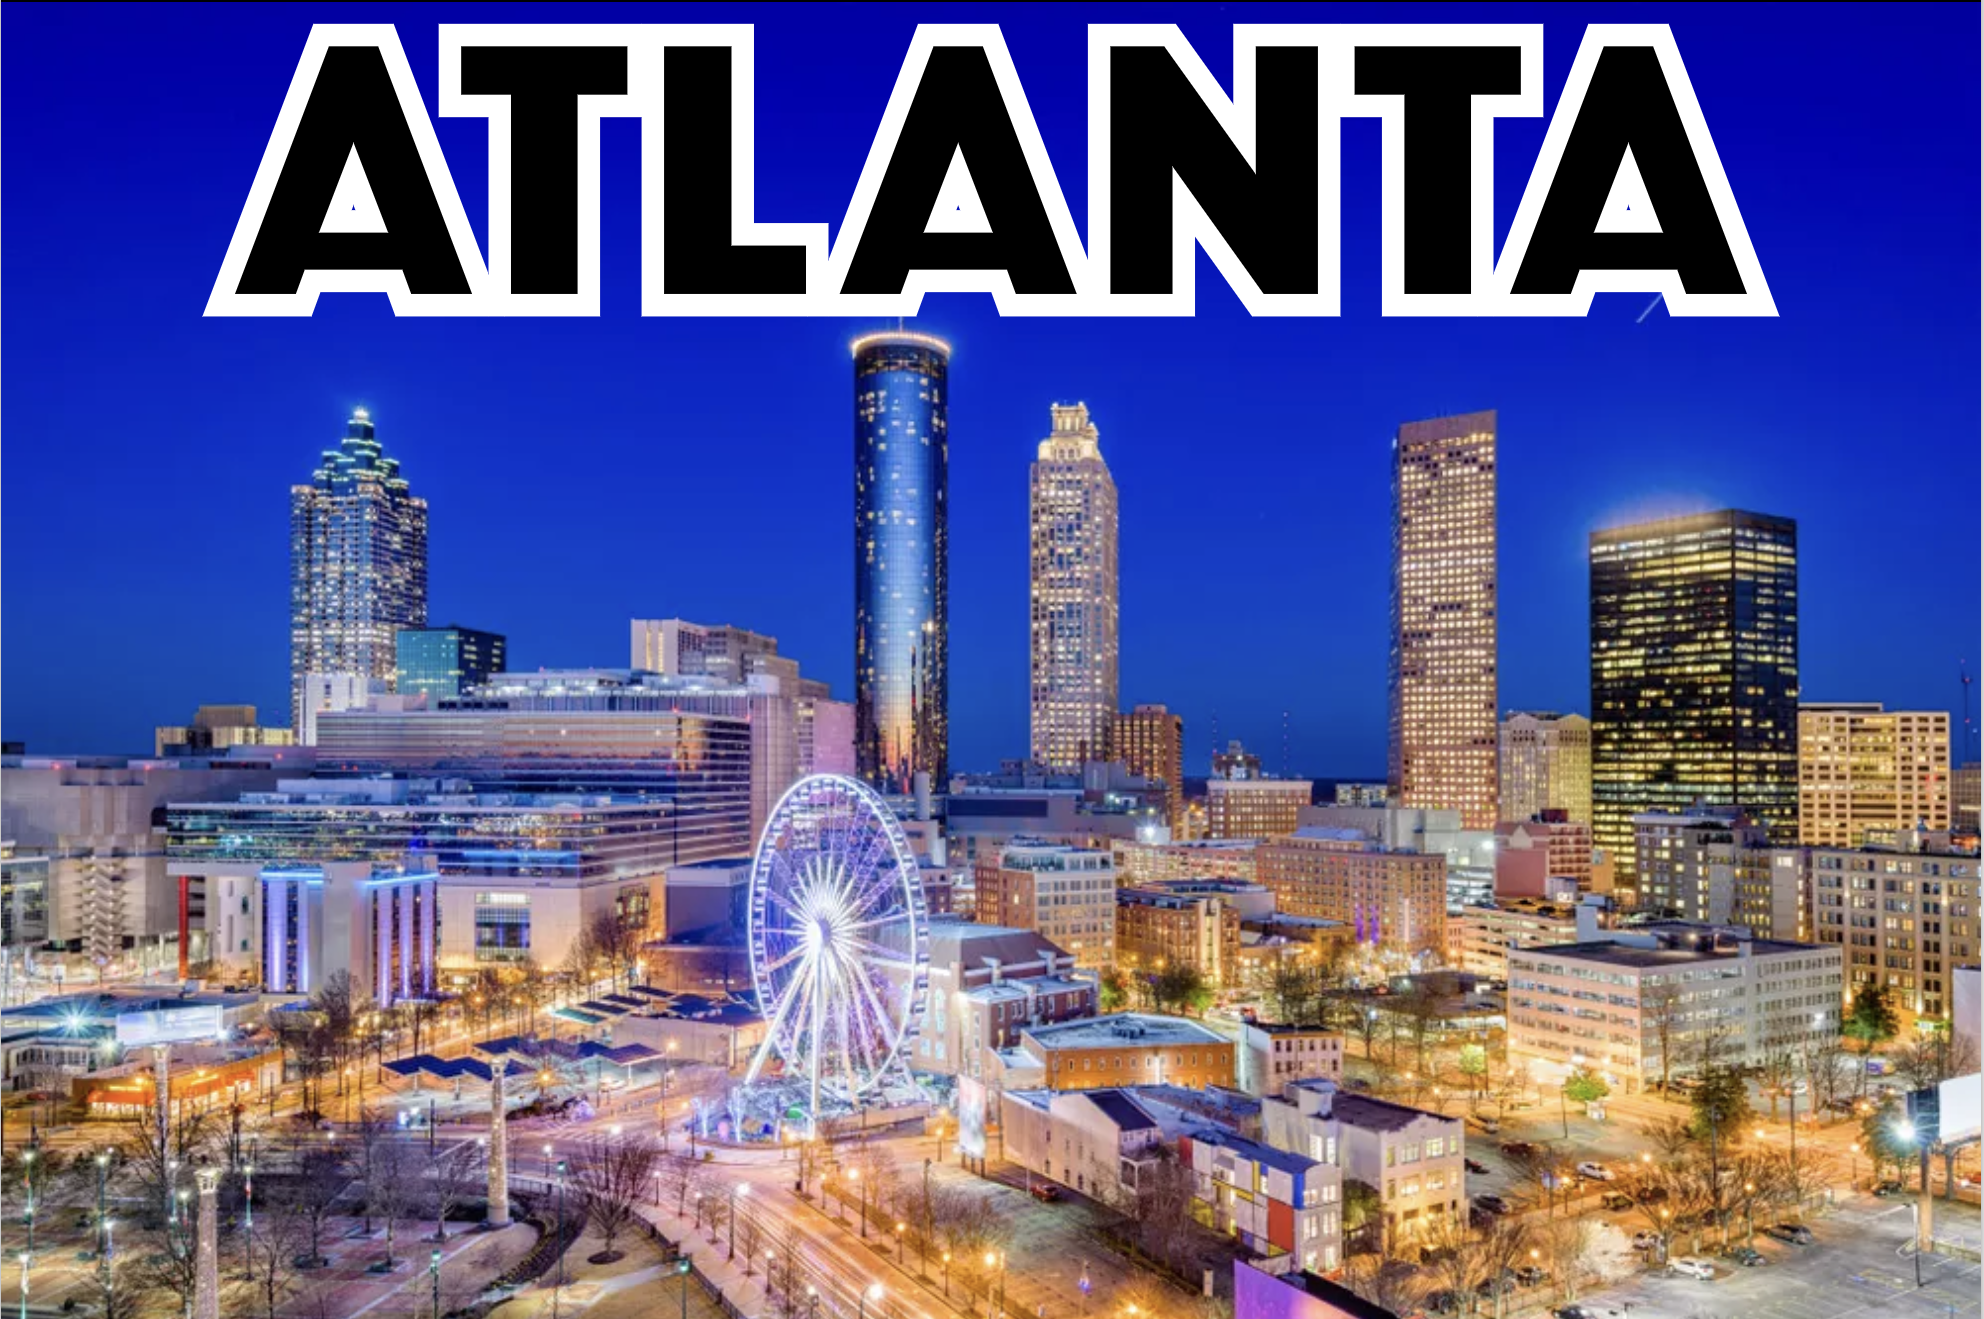 SouthEast - Atlanta